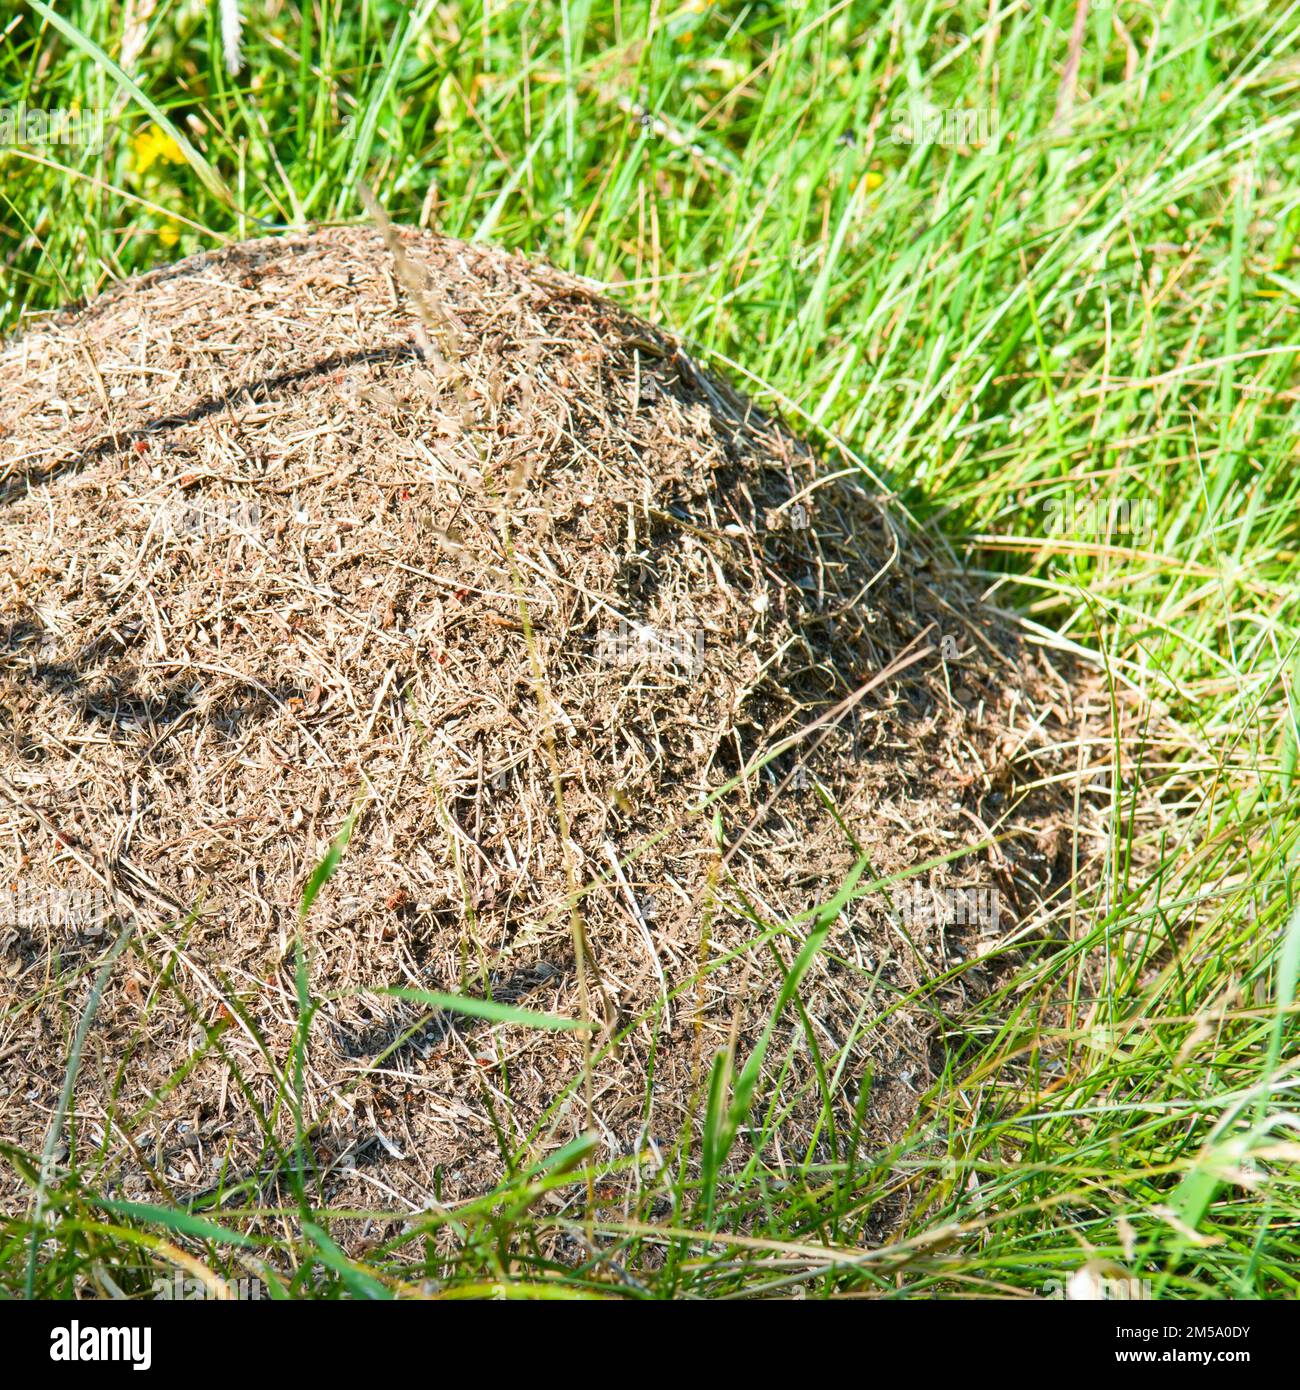 Ein Ameisenhaufen auf einer grünen Wiese im Gras. Stockfoto